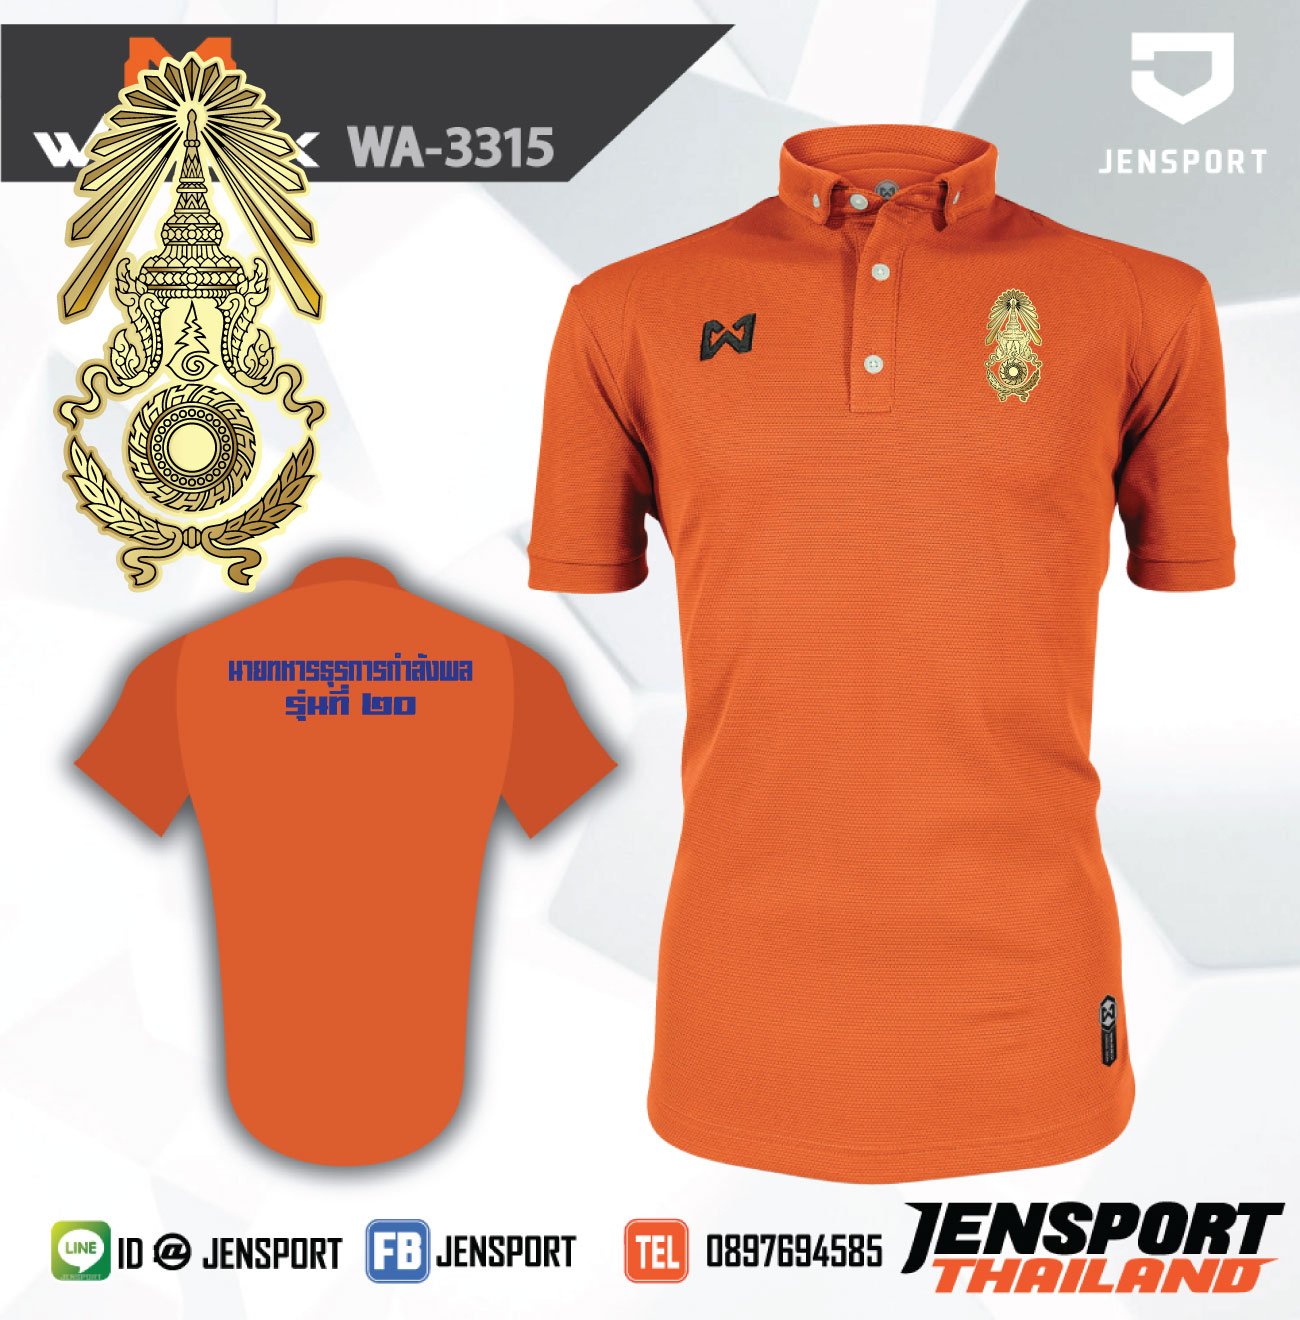 เสื้อ Warrix WA3315 คอปก สีส้ม ทีม กองทัพบก นายทหารธุรการ